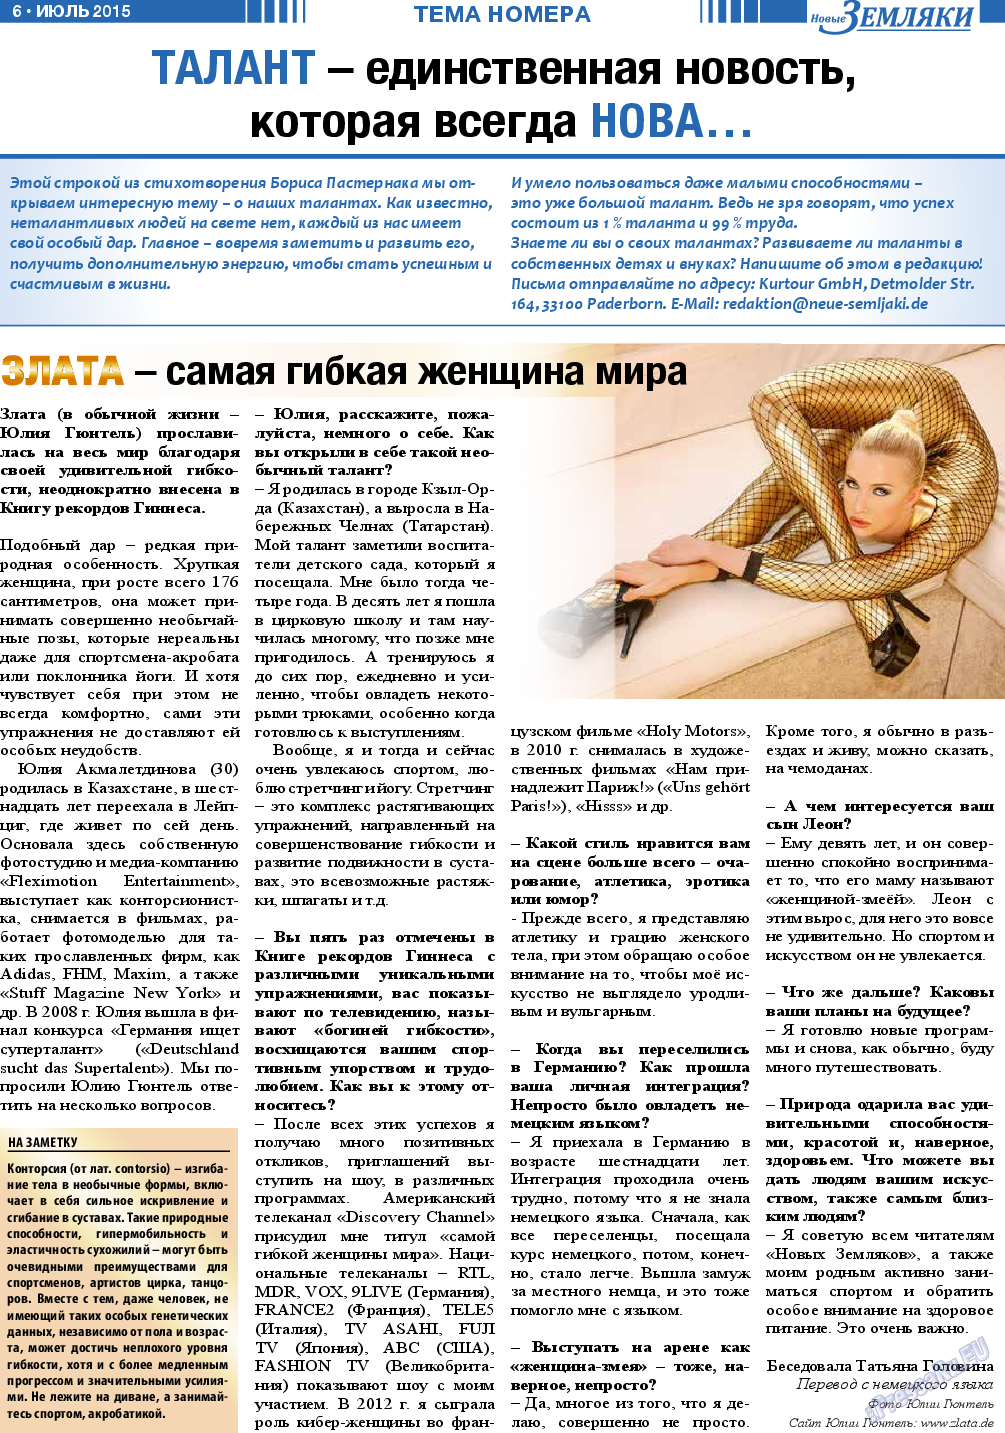 Новые Земляки, газета. 2015 №7 стр.6